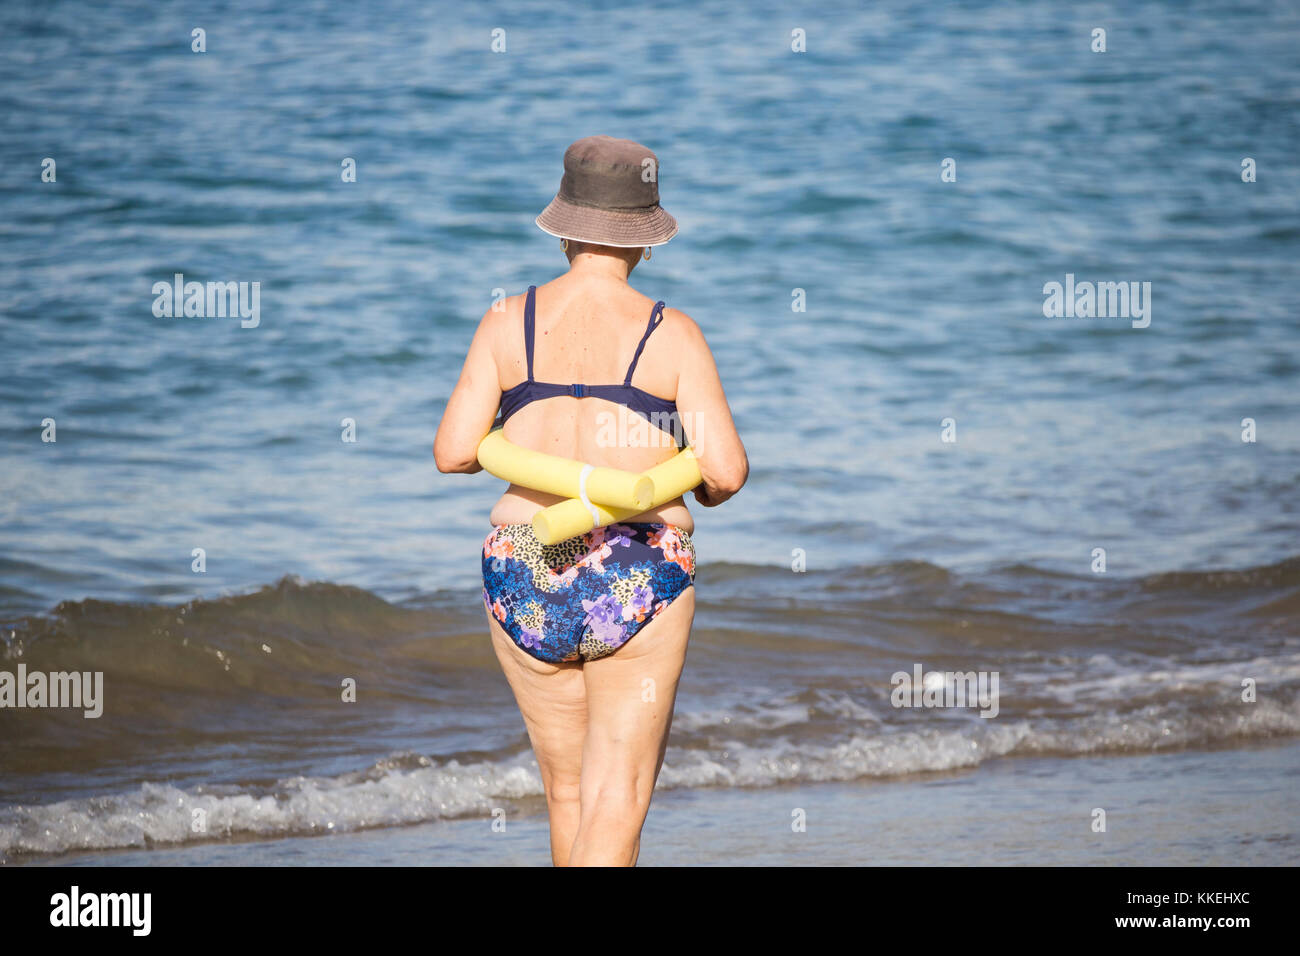 Les femmes espagnoles âgées qui vont nager dans la mer après leur cours de yoga/étirements quotidien sur la plage. Banque D'Images